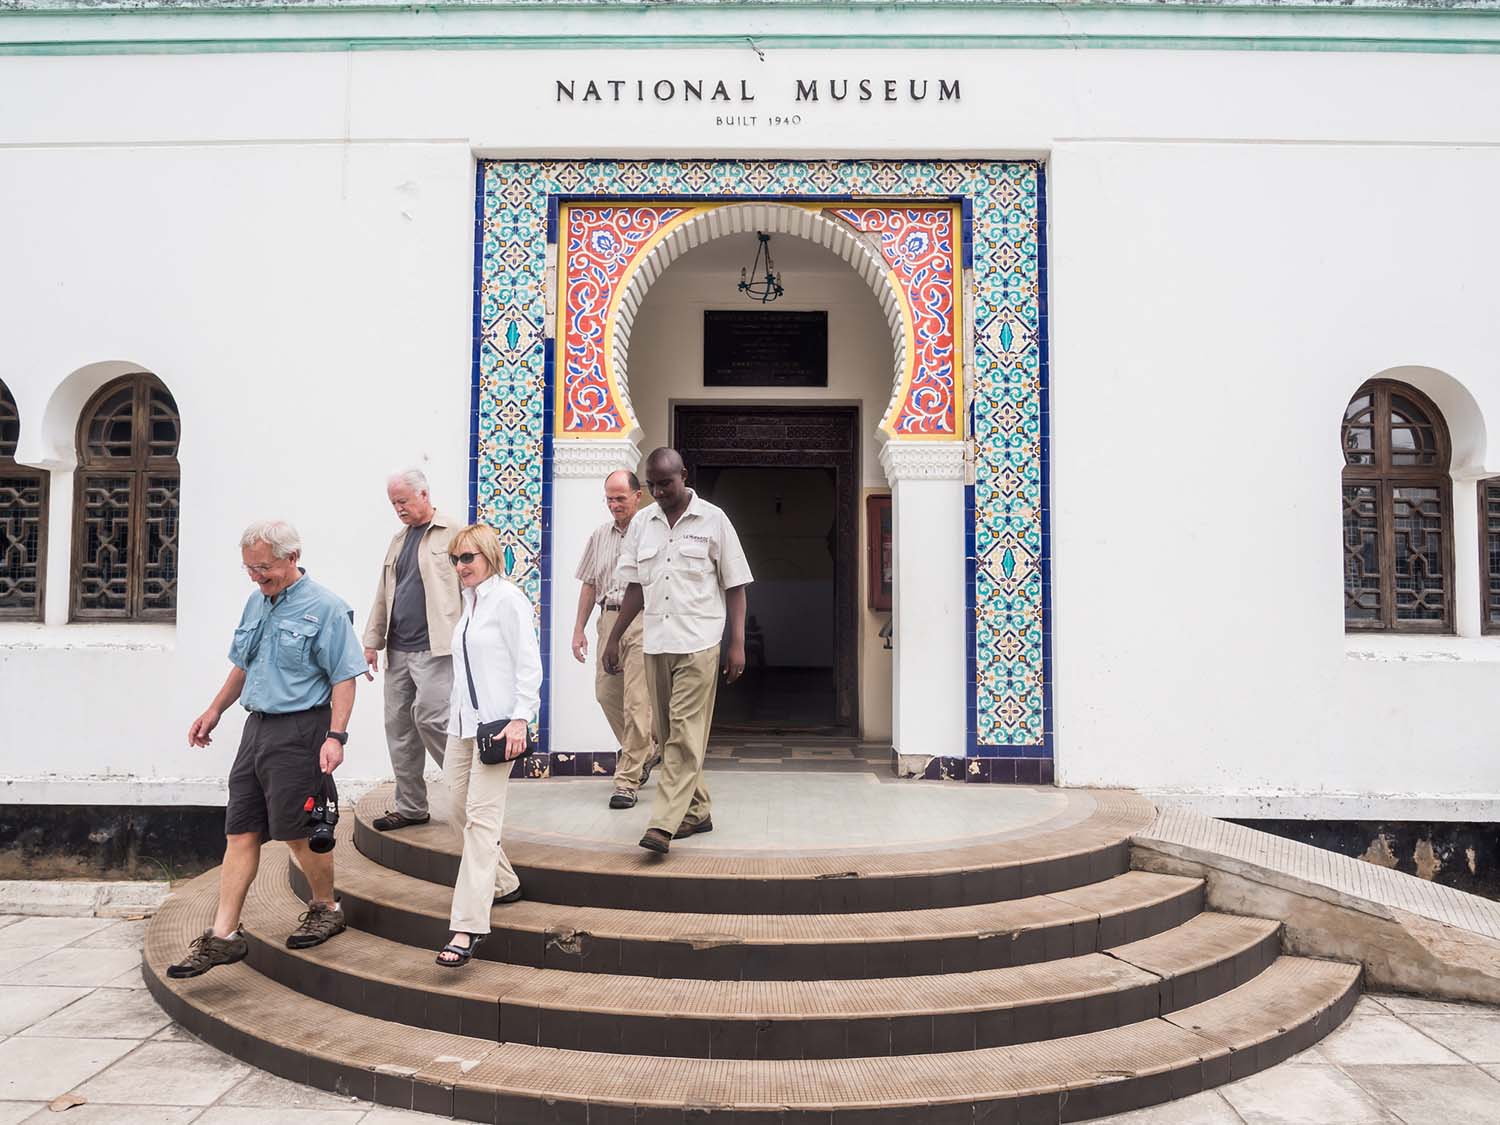 Dar es Salaam National Museum